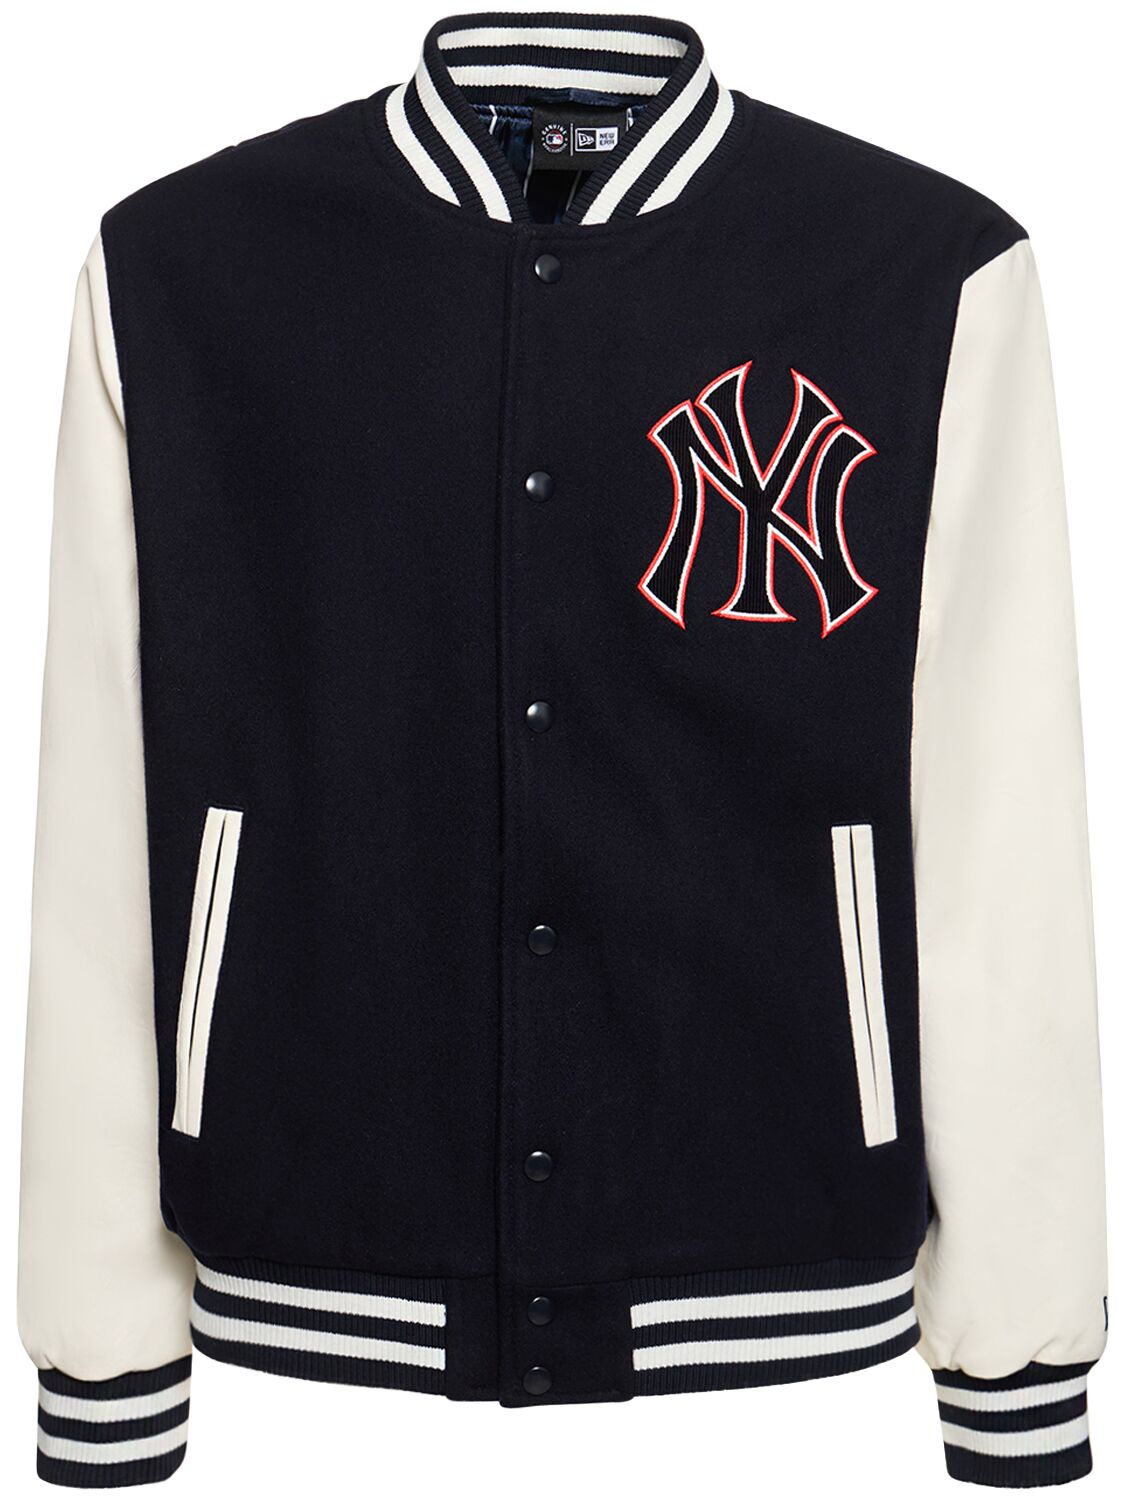 New Era Mlb Lifestyle Ny Yankees Varsity Jacket In Black